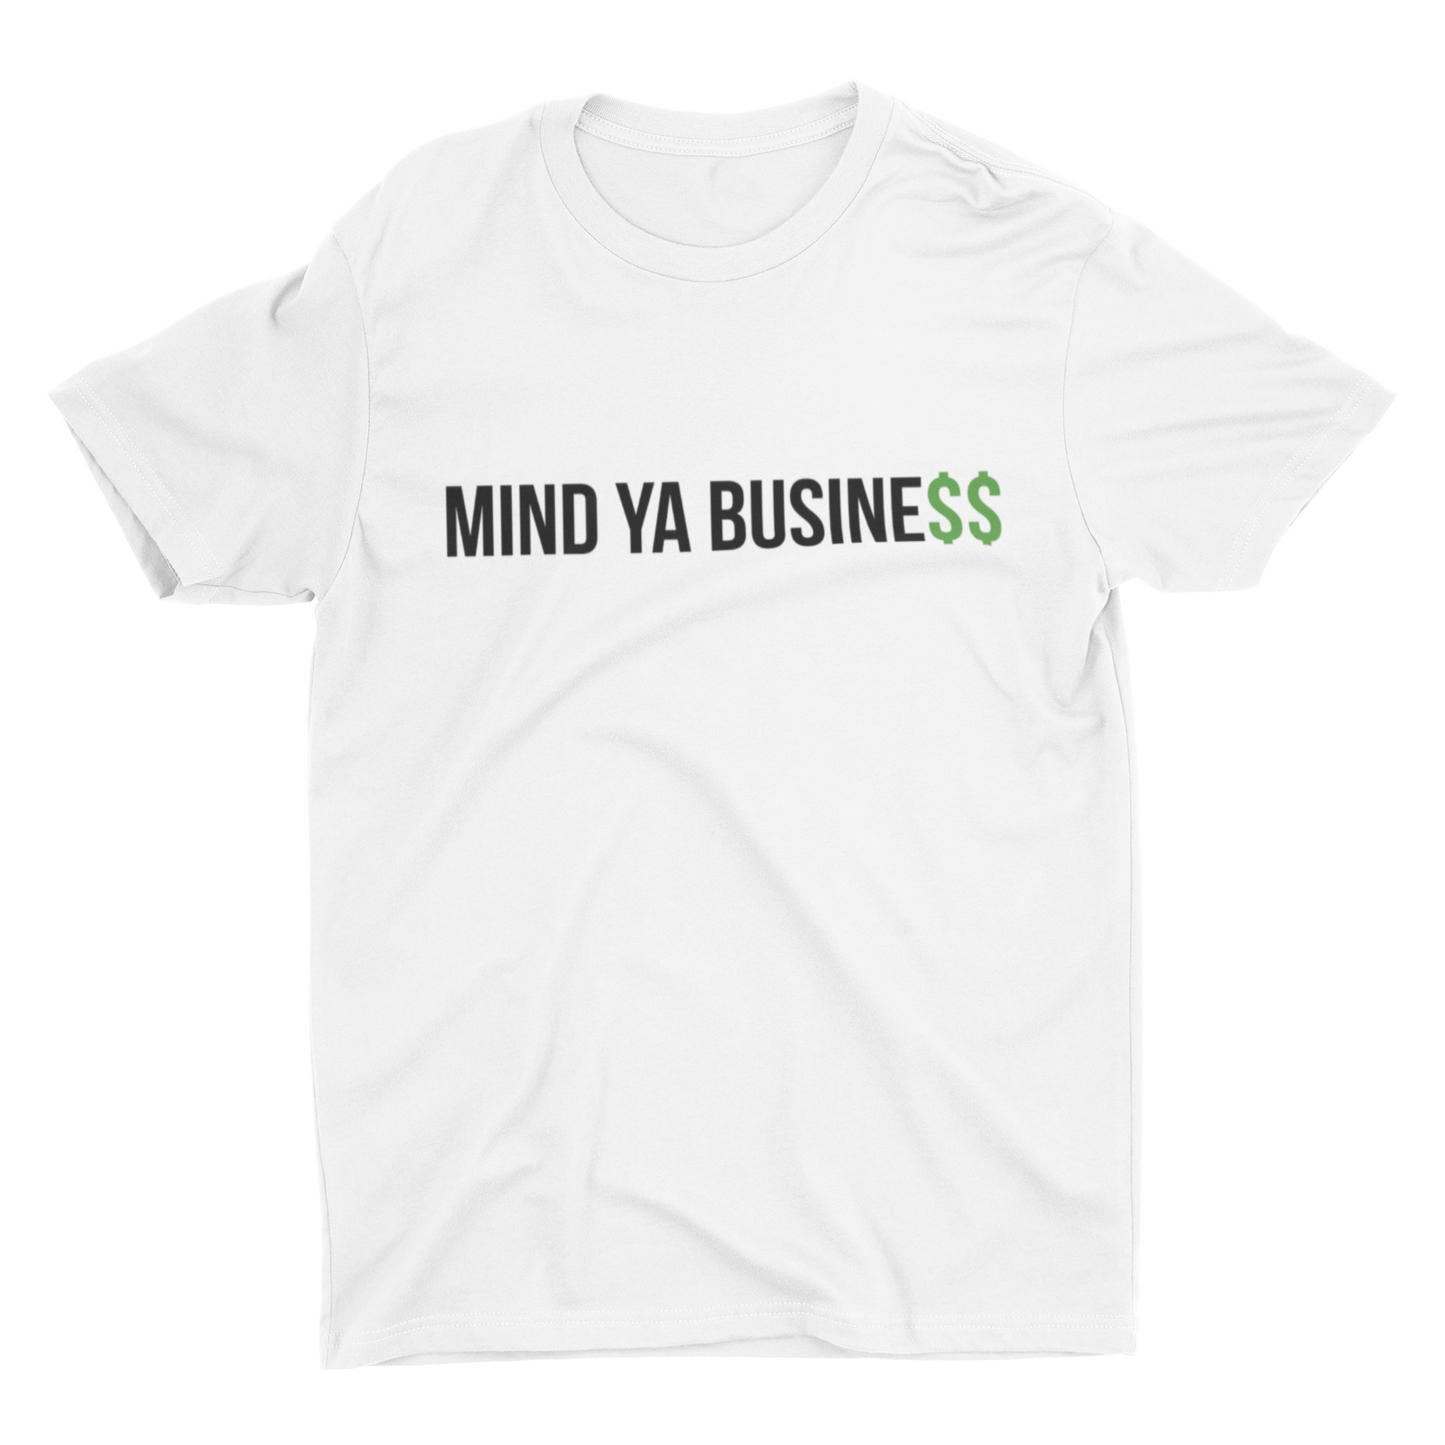 Mind Ya Busine$$ T-Shirt